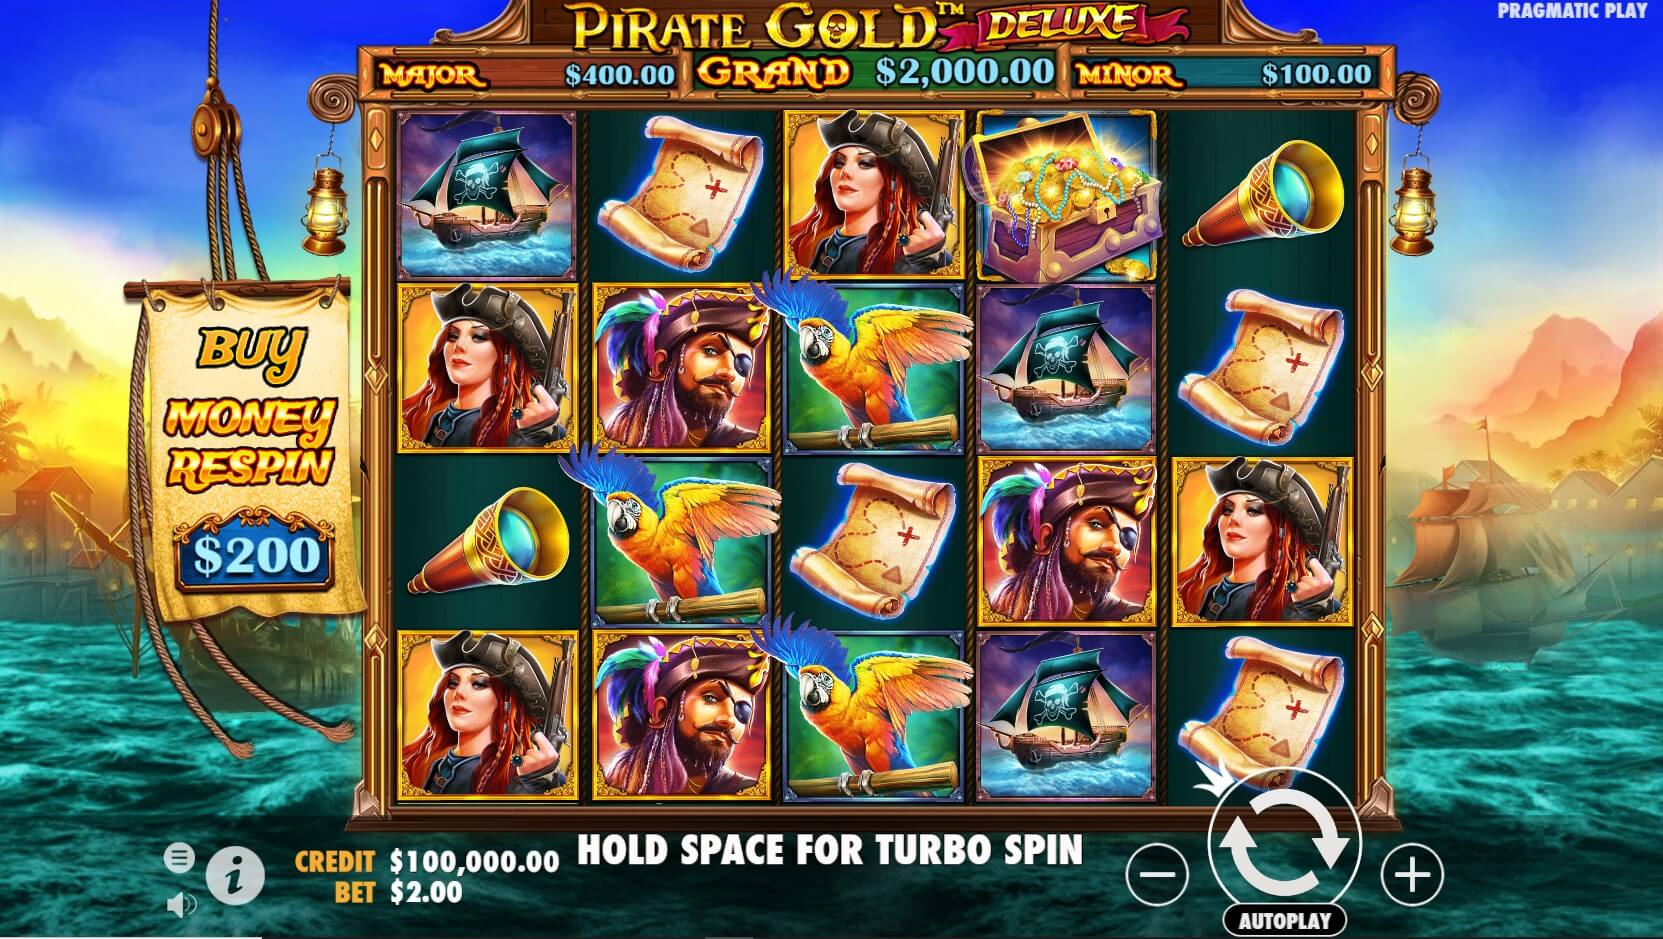 Pirate Gold Deluxe Spielautomaten Bewertung, Walzen und Symbolen